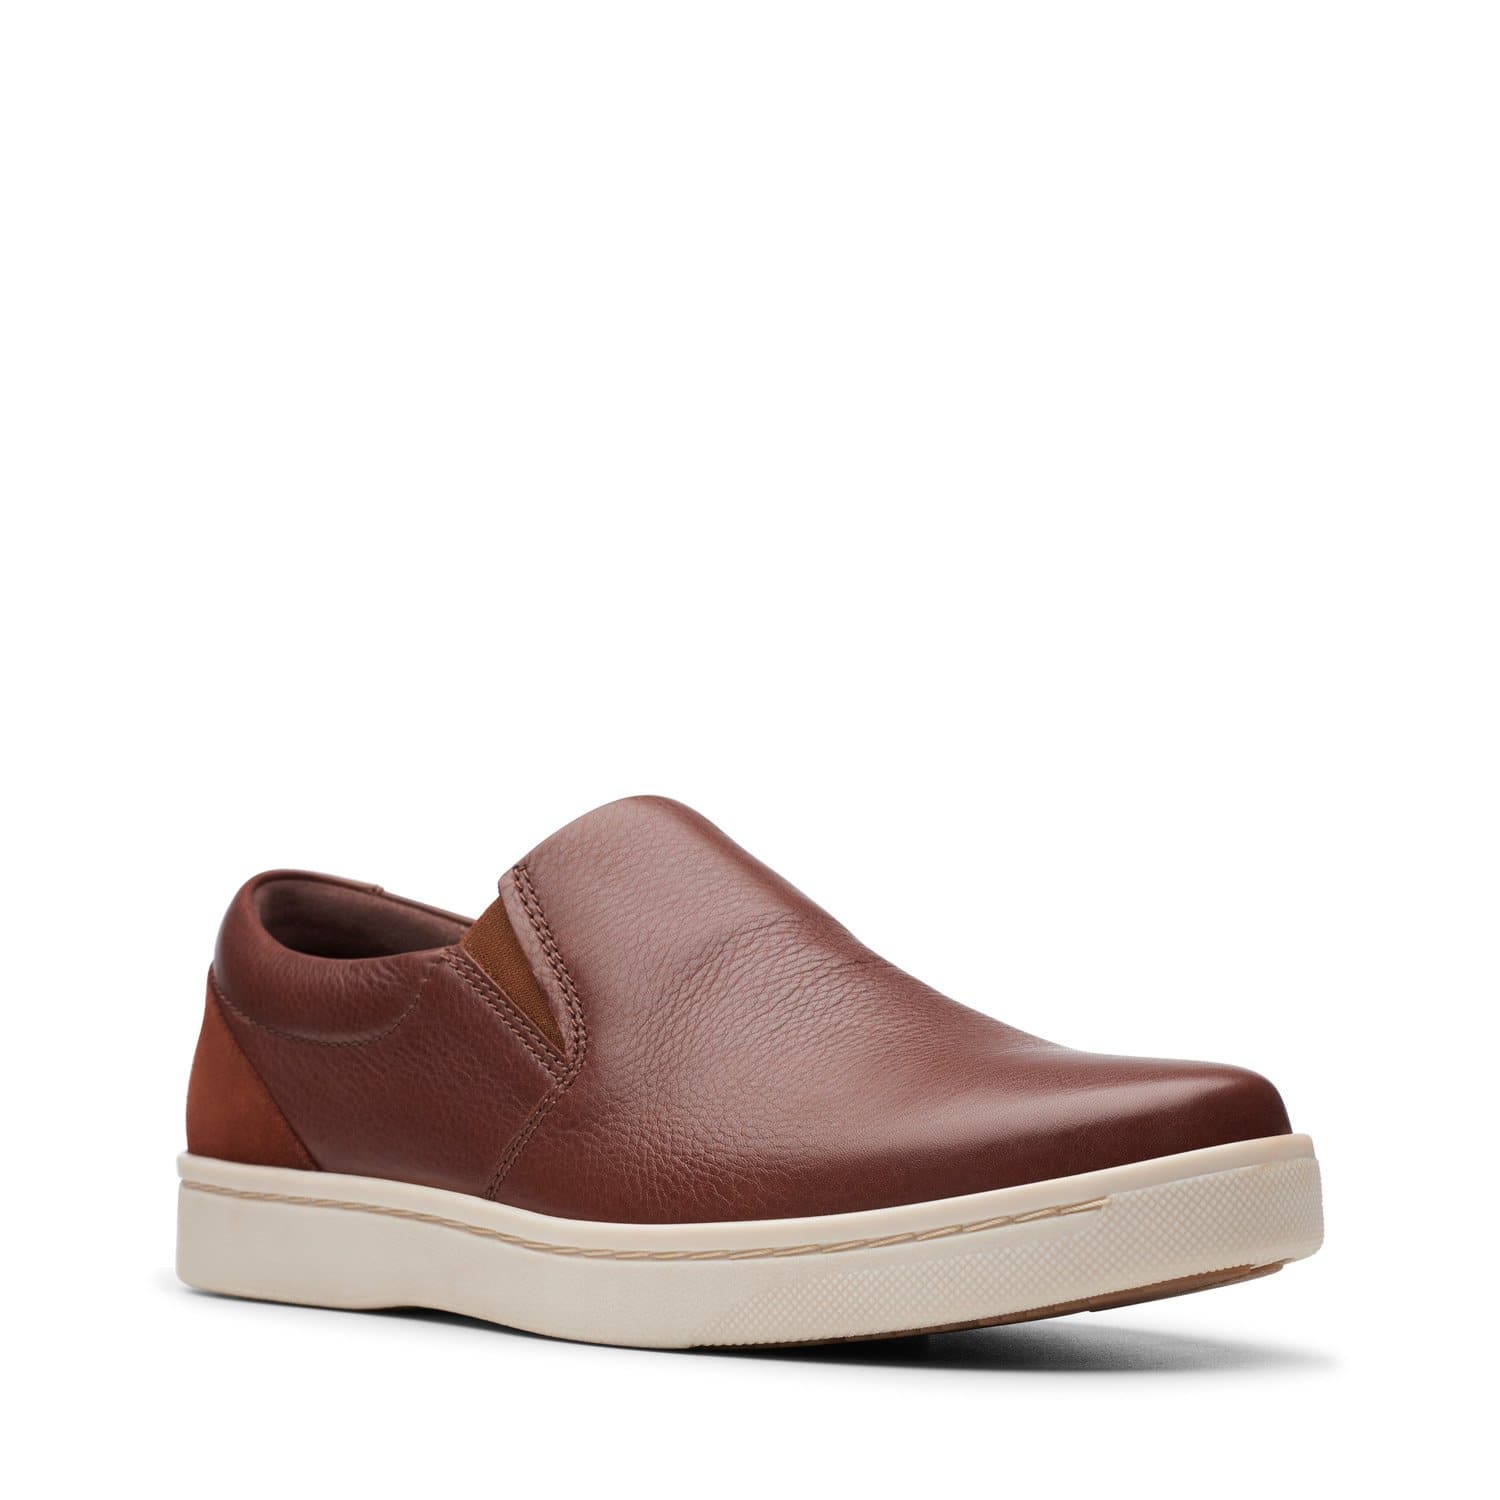 Clarks-Kitna-Free-Men's-Shoes-Mahogany-Leather-26144886